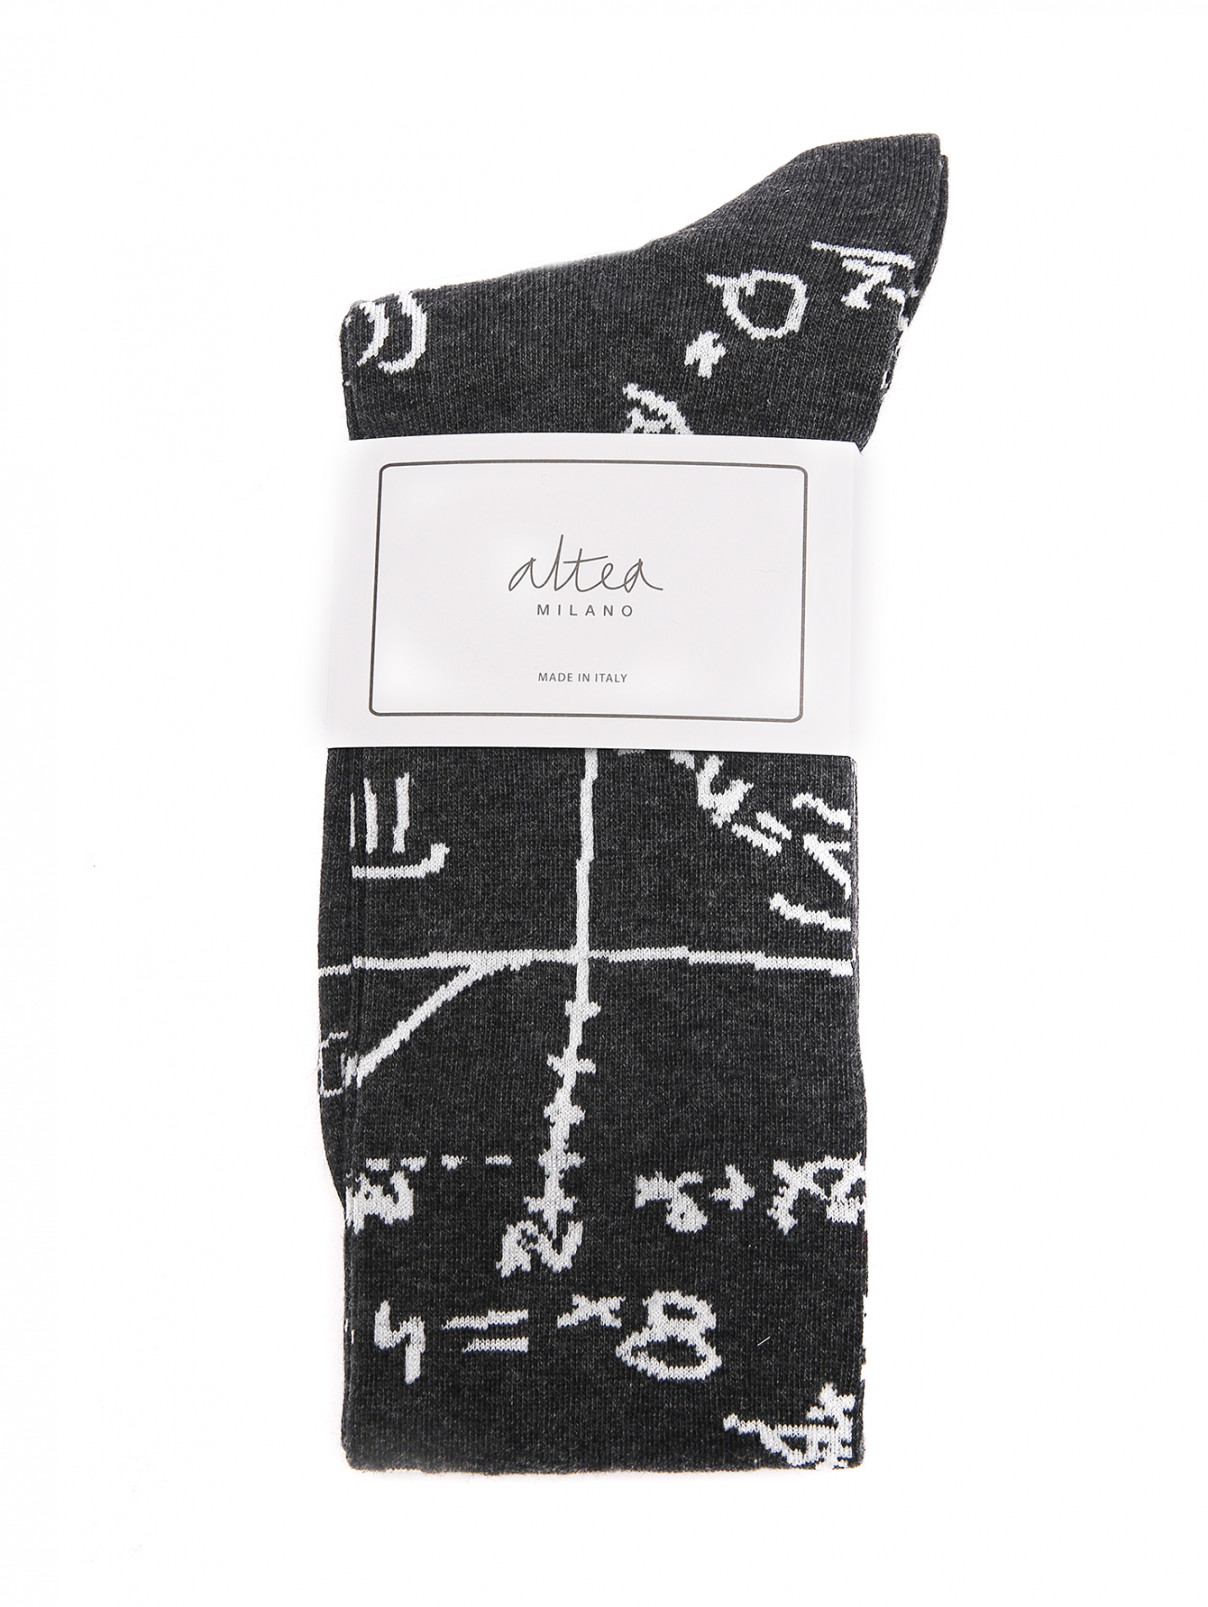 Носки из хлопка с узором Altea  –  Общий вид  – Цвет:  Серый